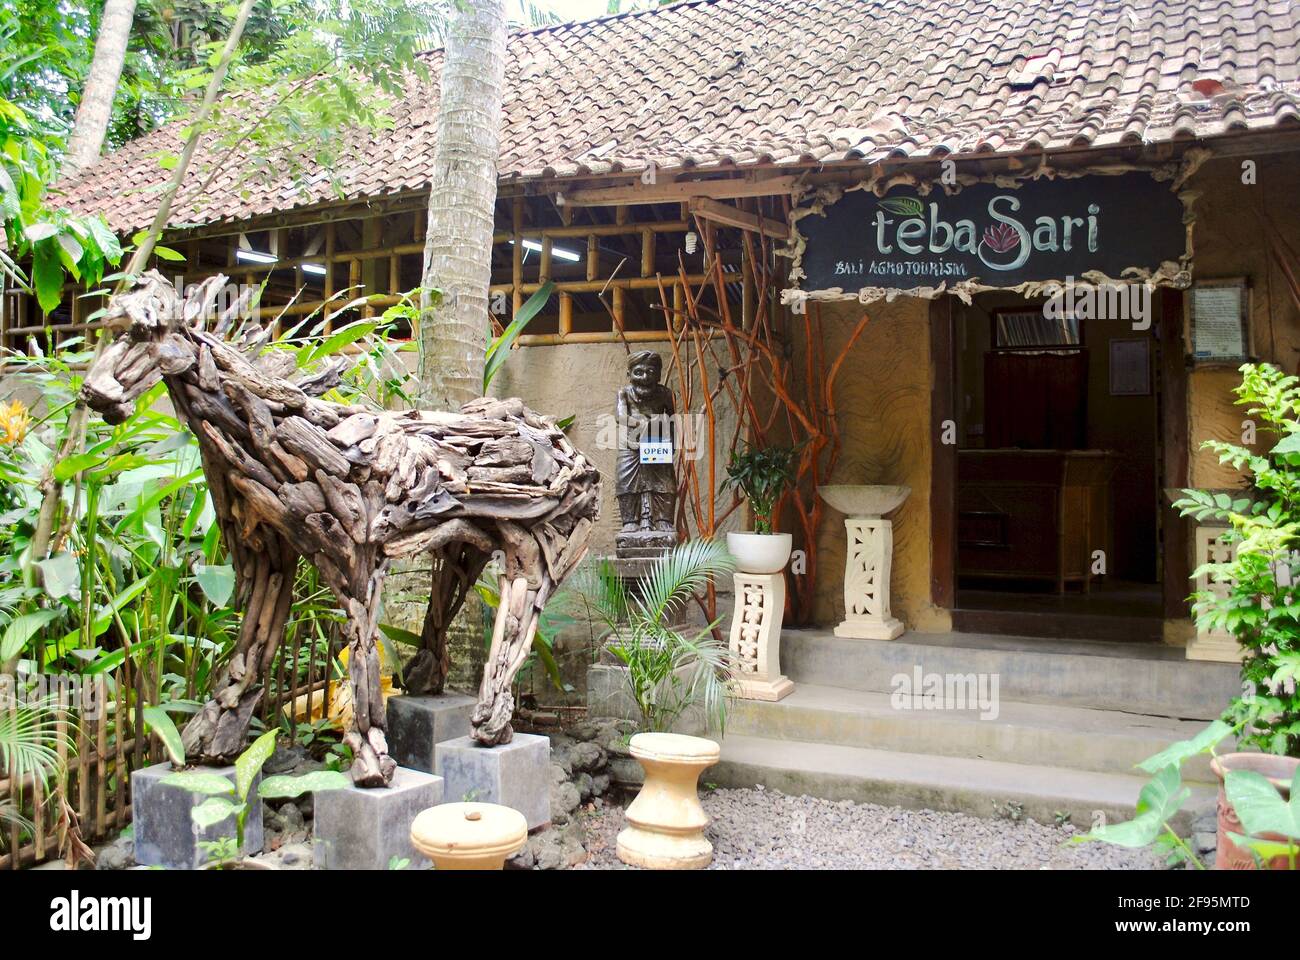 Bali, Indonesia: Ingresso al Teba Sari Agroturismo, un piccolo locale con caffè Luwak. Driftwood cavallo scultura e tetto in piastrelle. Foto Stock